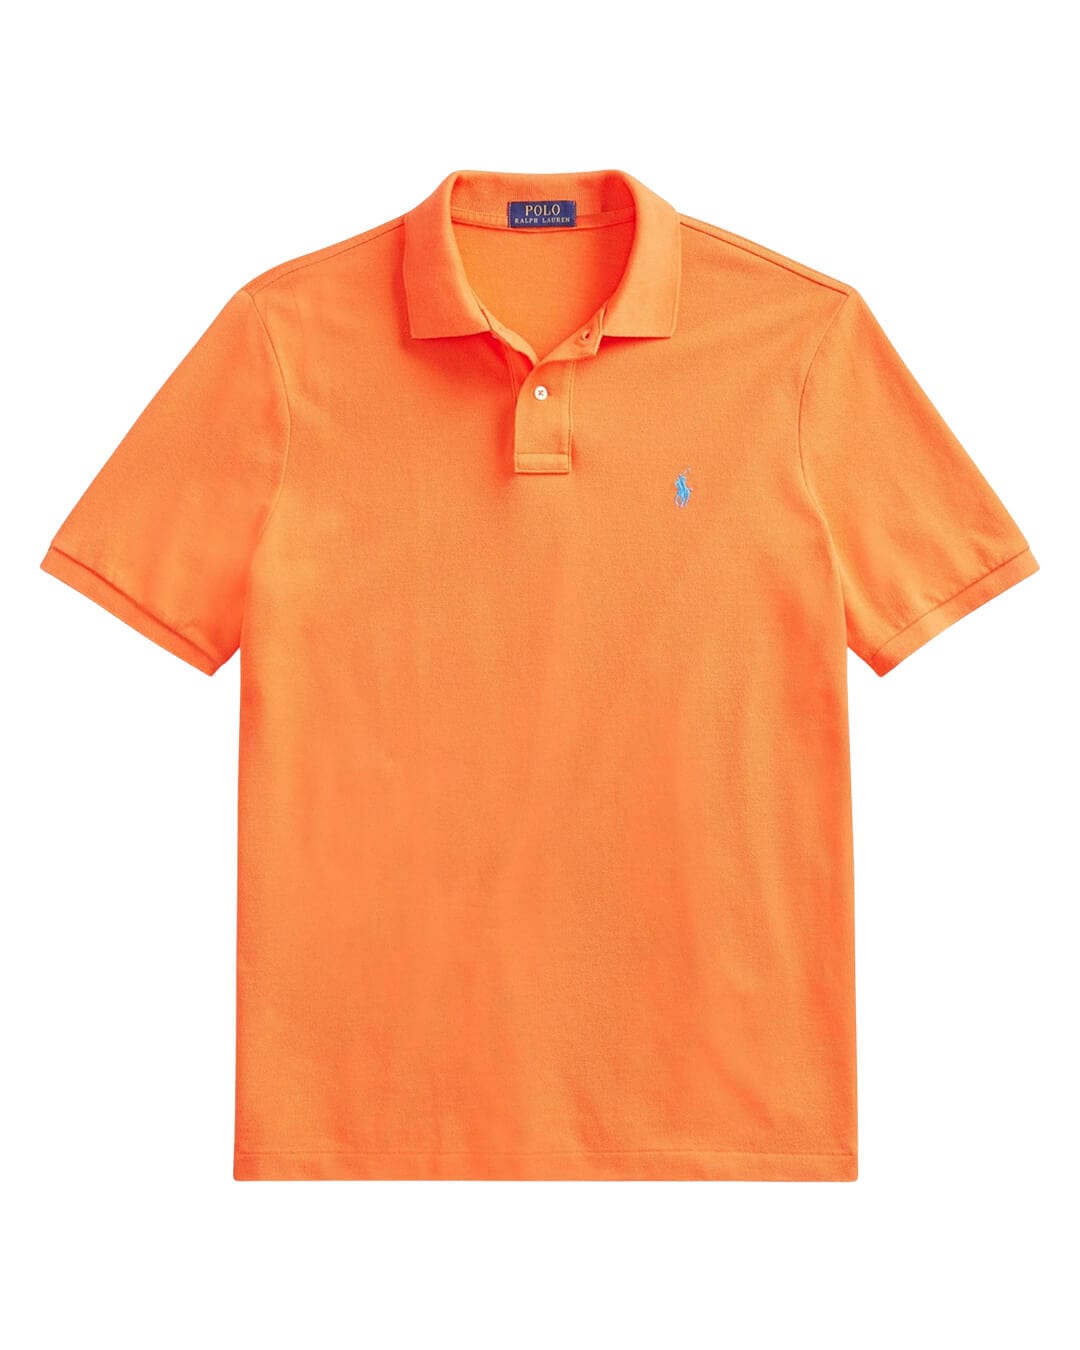 Polo Ralph Lauren Polo Shirts Polo Ralph Lauren Orange Cotton Polo Shirt